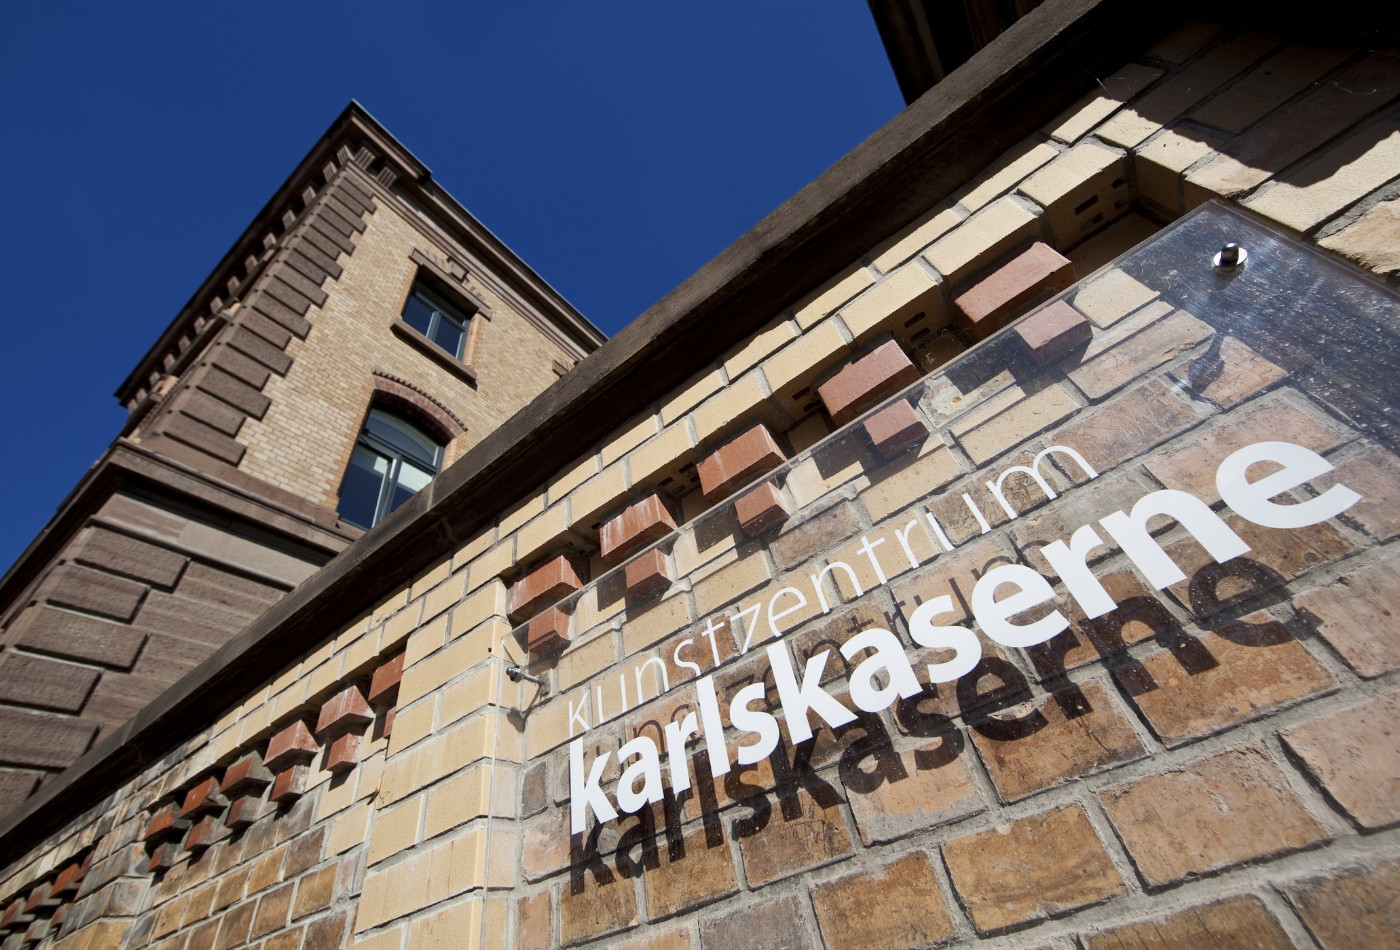 Blick auf die Fassade des Kunstzentrums Karskaserne mit weißem Schriftzug